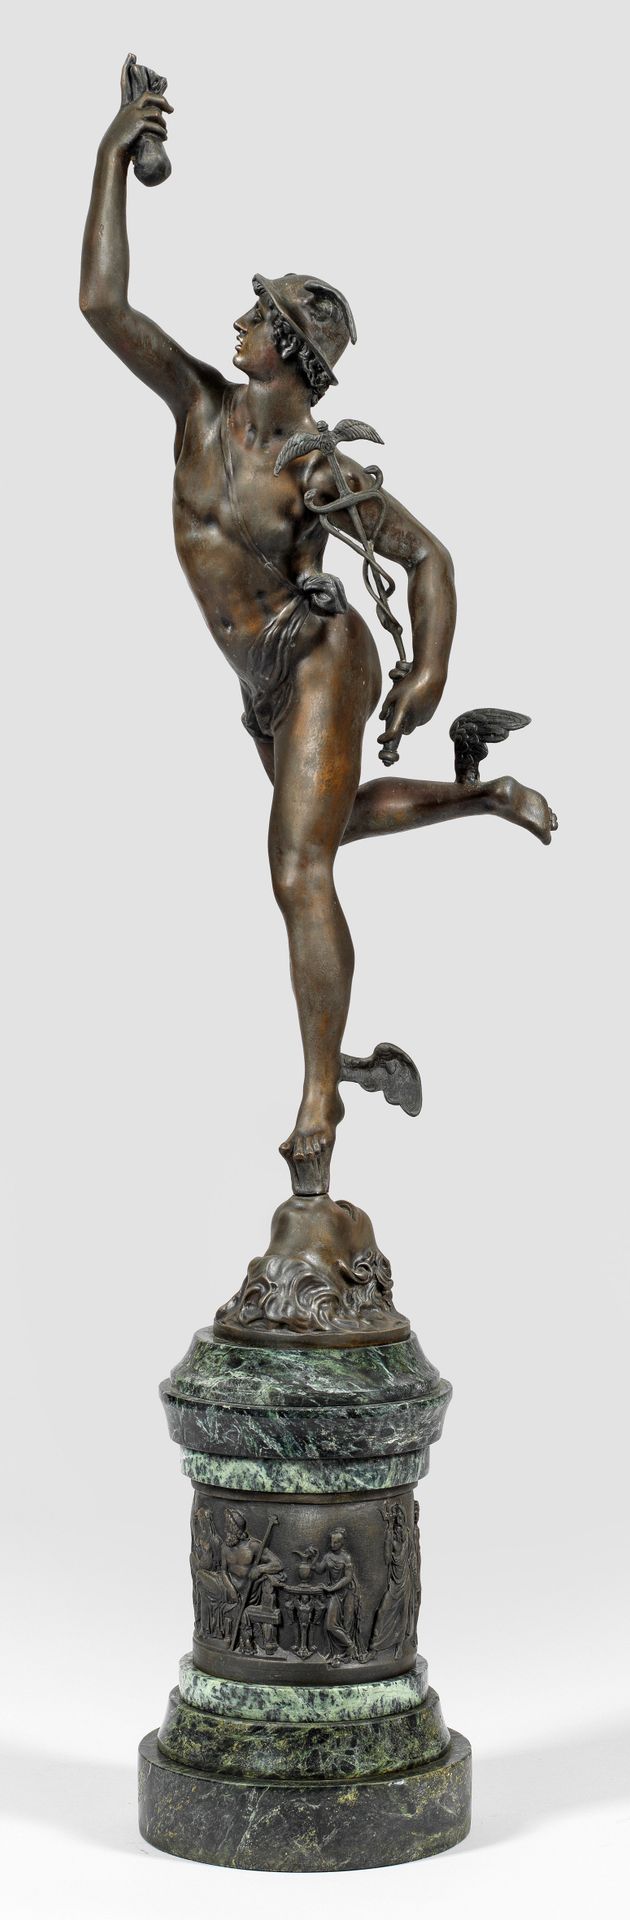 Null 詹博洛尼亚（1529 杜埃 - 1608 佛罗伦萨）在《墨丘利》之后
水银
青铜，深褐色铜锈；深绿色至无烟煤色大理石和铜锈的柱基。艺术家印记；根据佛罗&hellip;